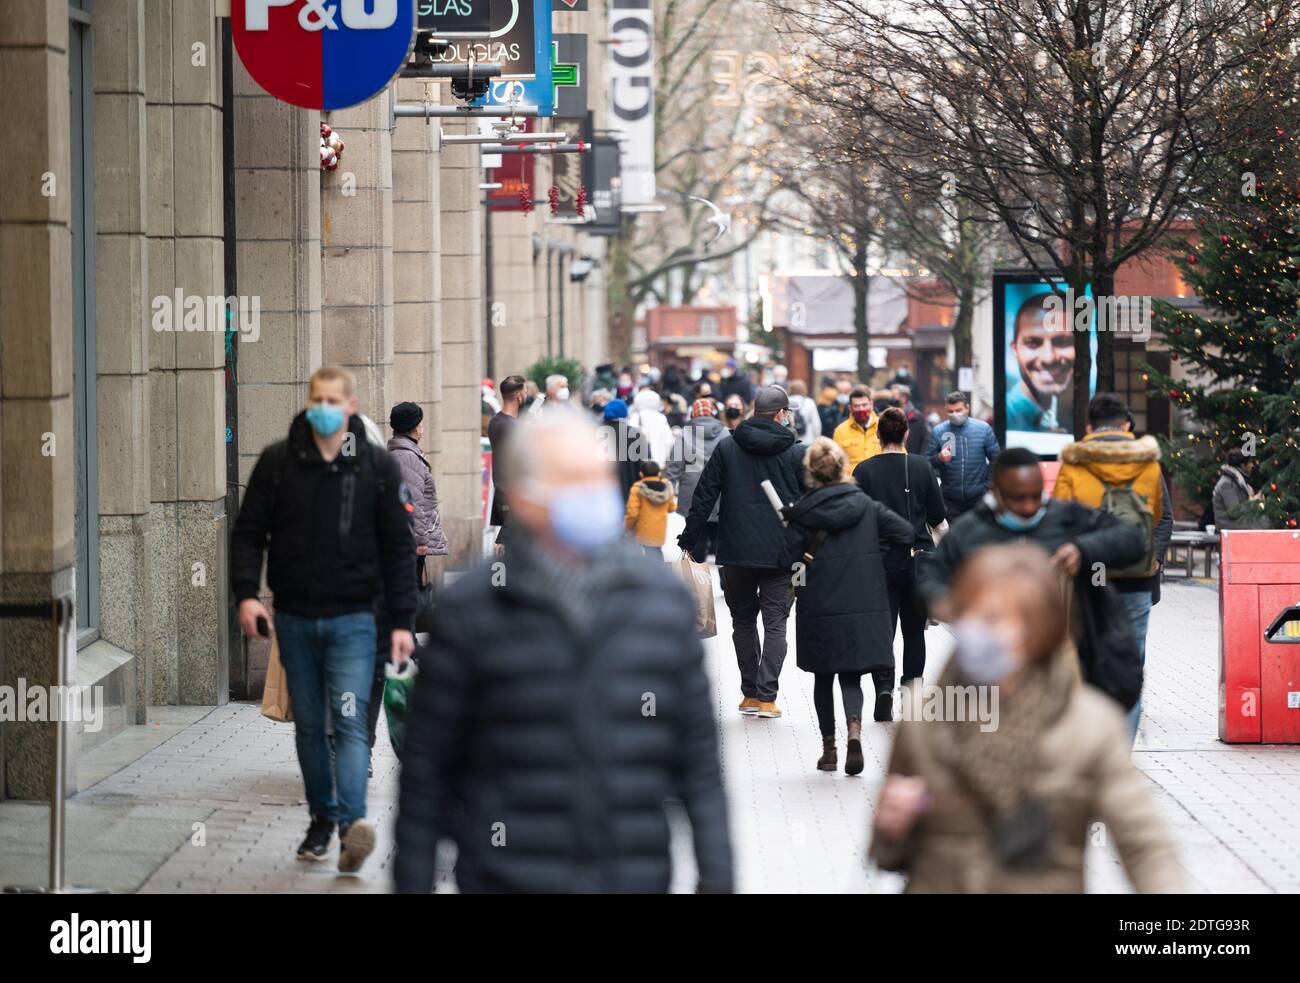 Hamburg, Deutschland. Dezember 2020. Zahlreiche Passanten laufen entlang der Einkaufsstraße Spitalerstrasse. Quelle: Daniel Reinhardt/dpa/Alamy Live News Stockfoto